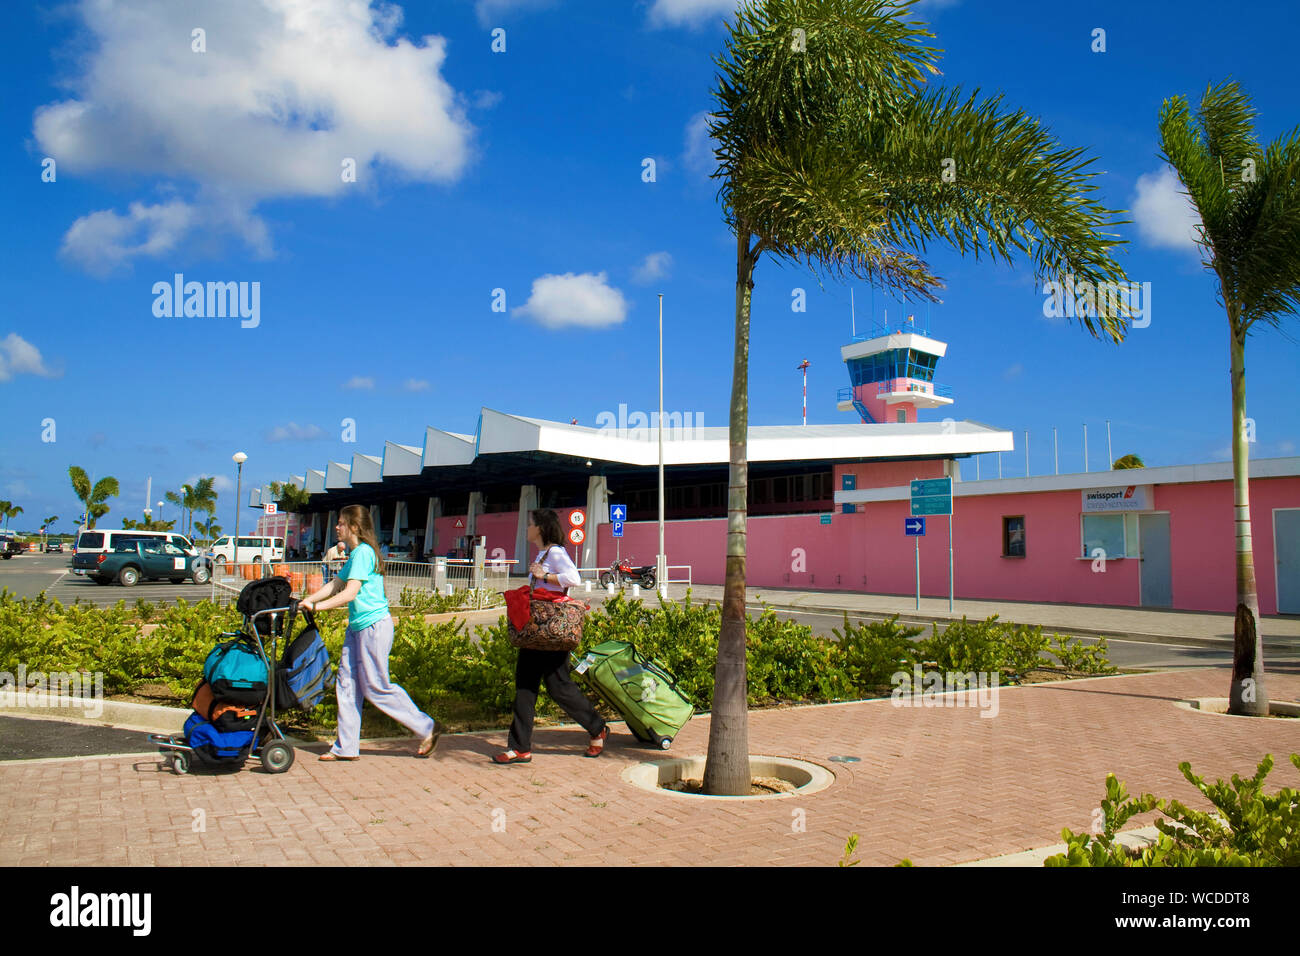 Reisende im Flamingo Airport, der internationale Flughafen Bonaire, Kralendijk, Bonaire, Niederländische Antillen Stockfoto